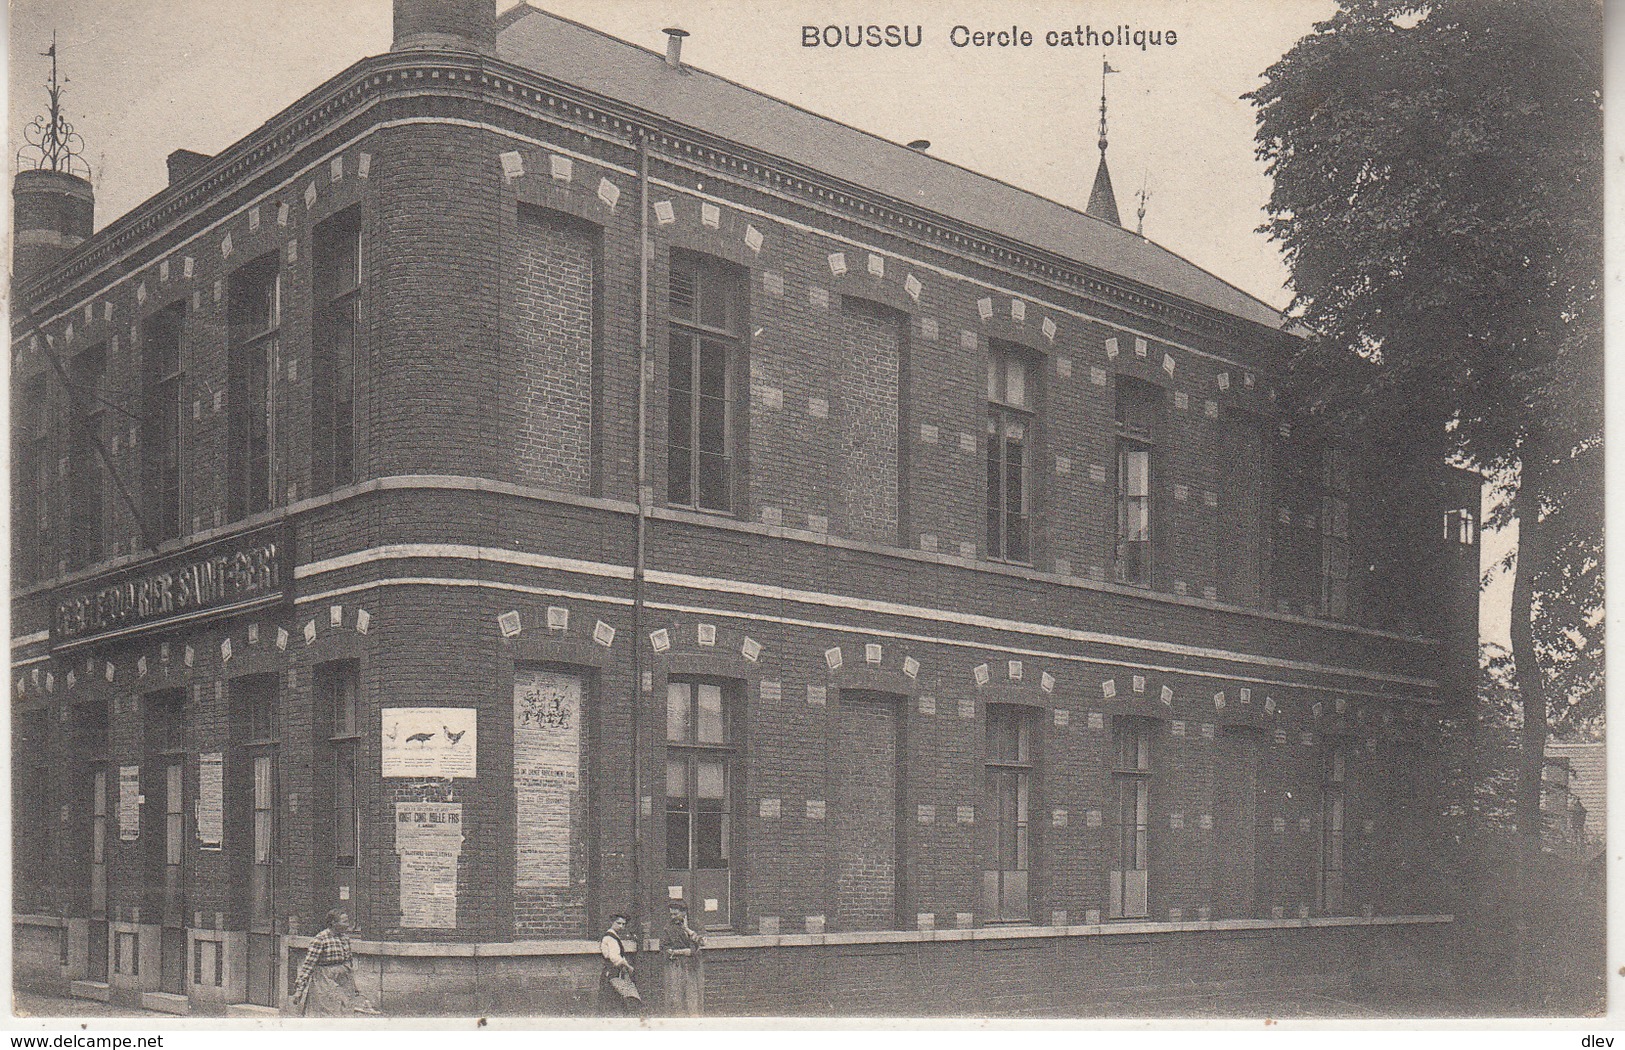 Boussu - Cercle Cathjolique - 1912 - Edit. Vve Durez-Capart - Boussu